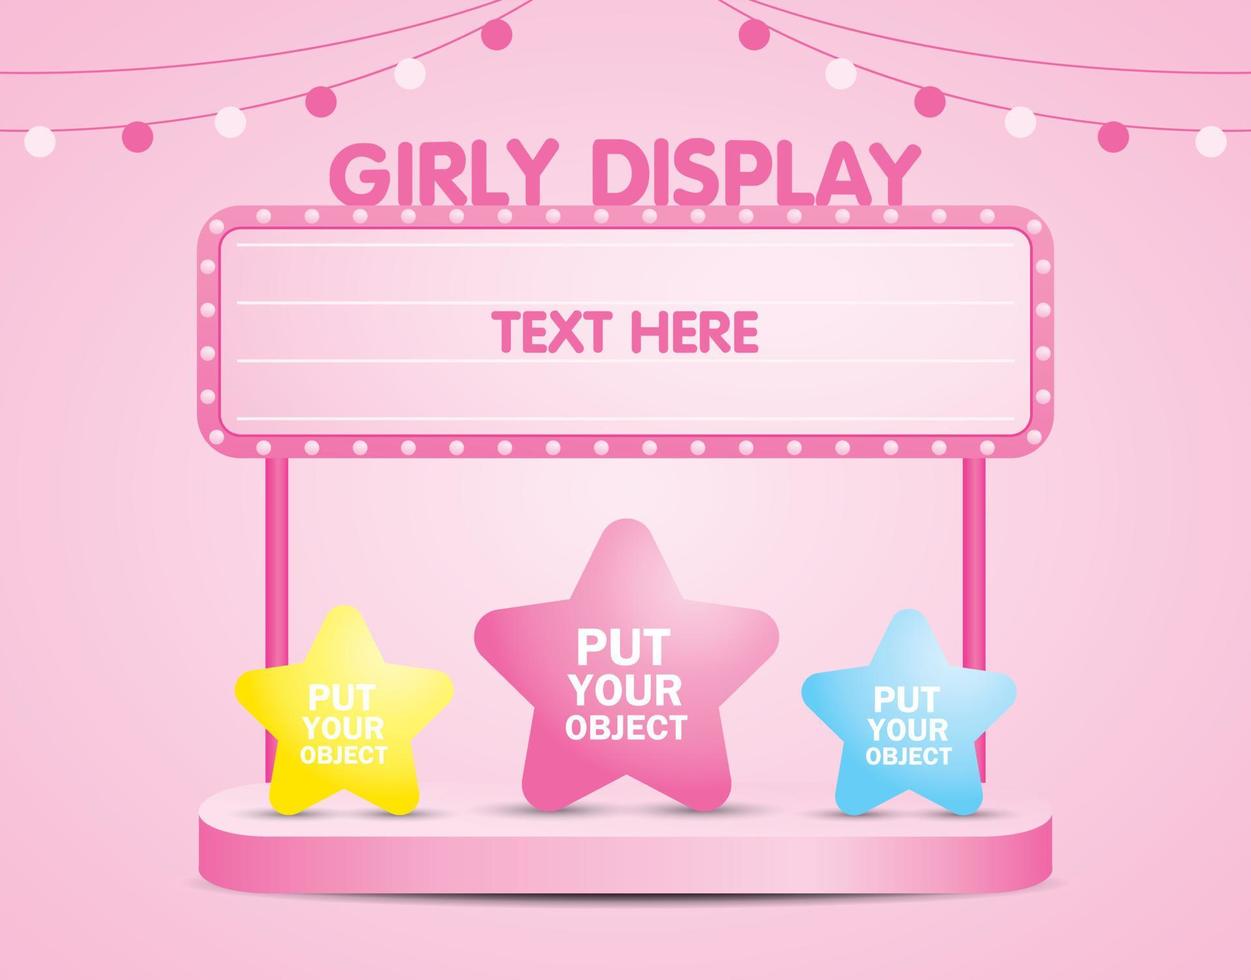 signalisation d'ampoule rose pour mettre votre texte avec l'étape d'affichage vecteur d'illustration 3d pour mettre votre objet sur fond rose pastel doux